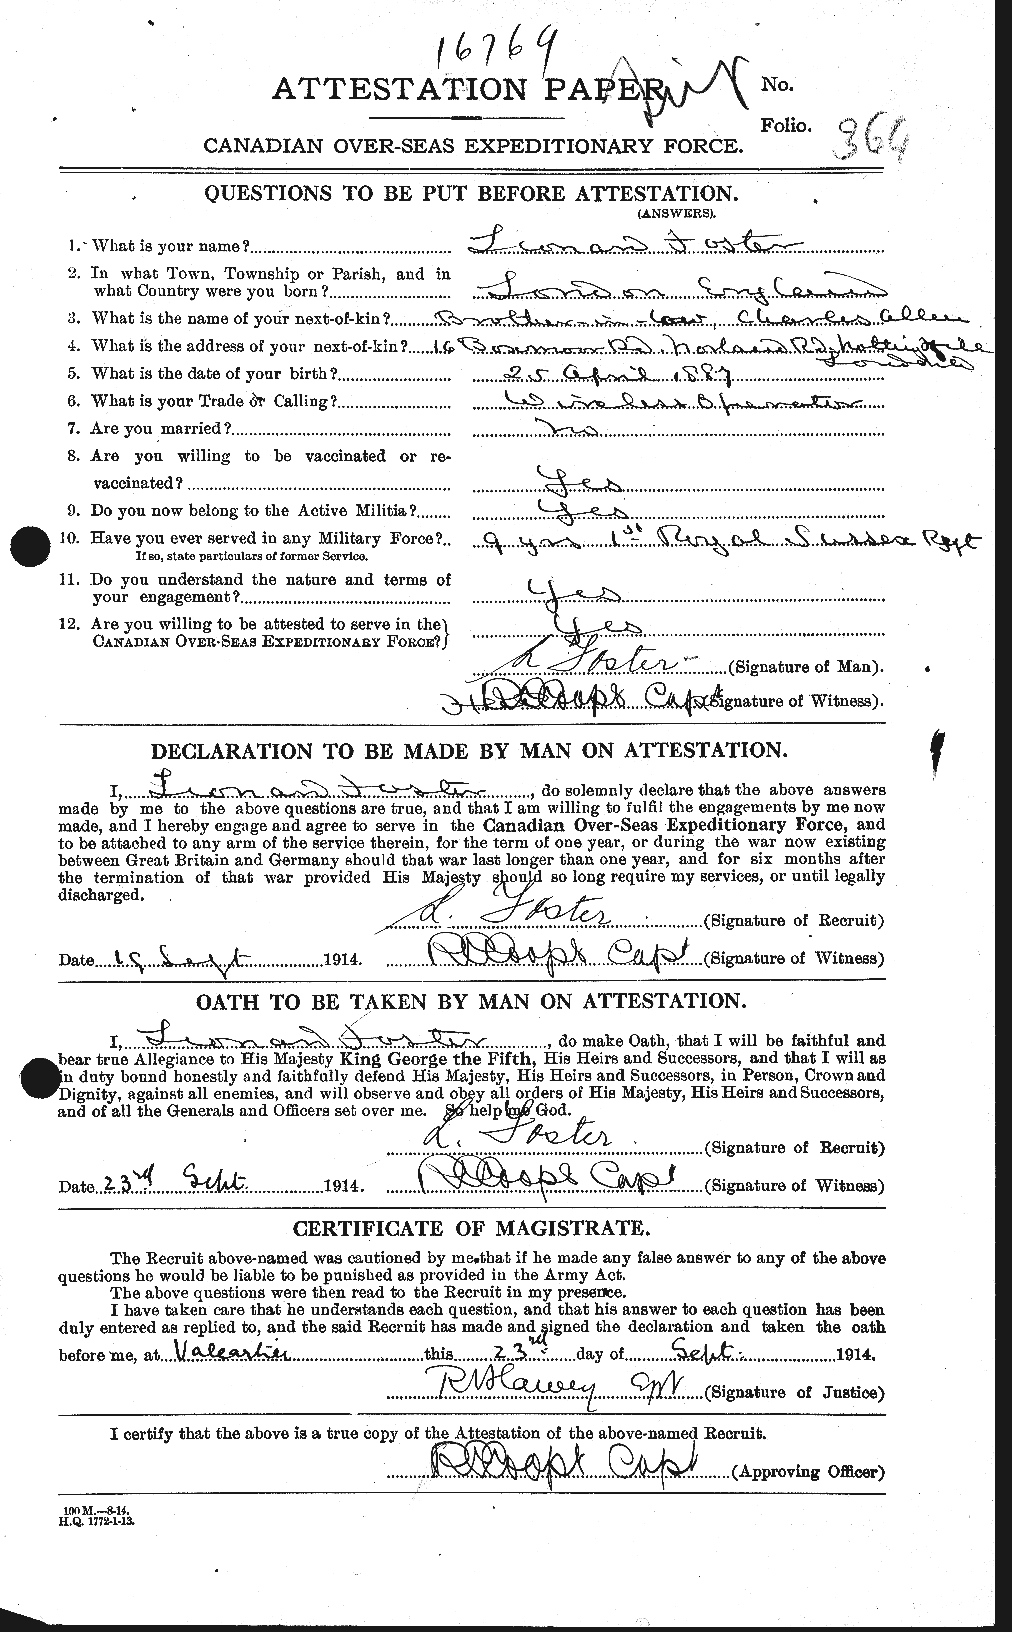 Dossiers du Personnel de la Première Guerre mondiale - CEC 333403a